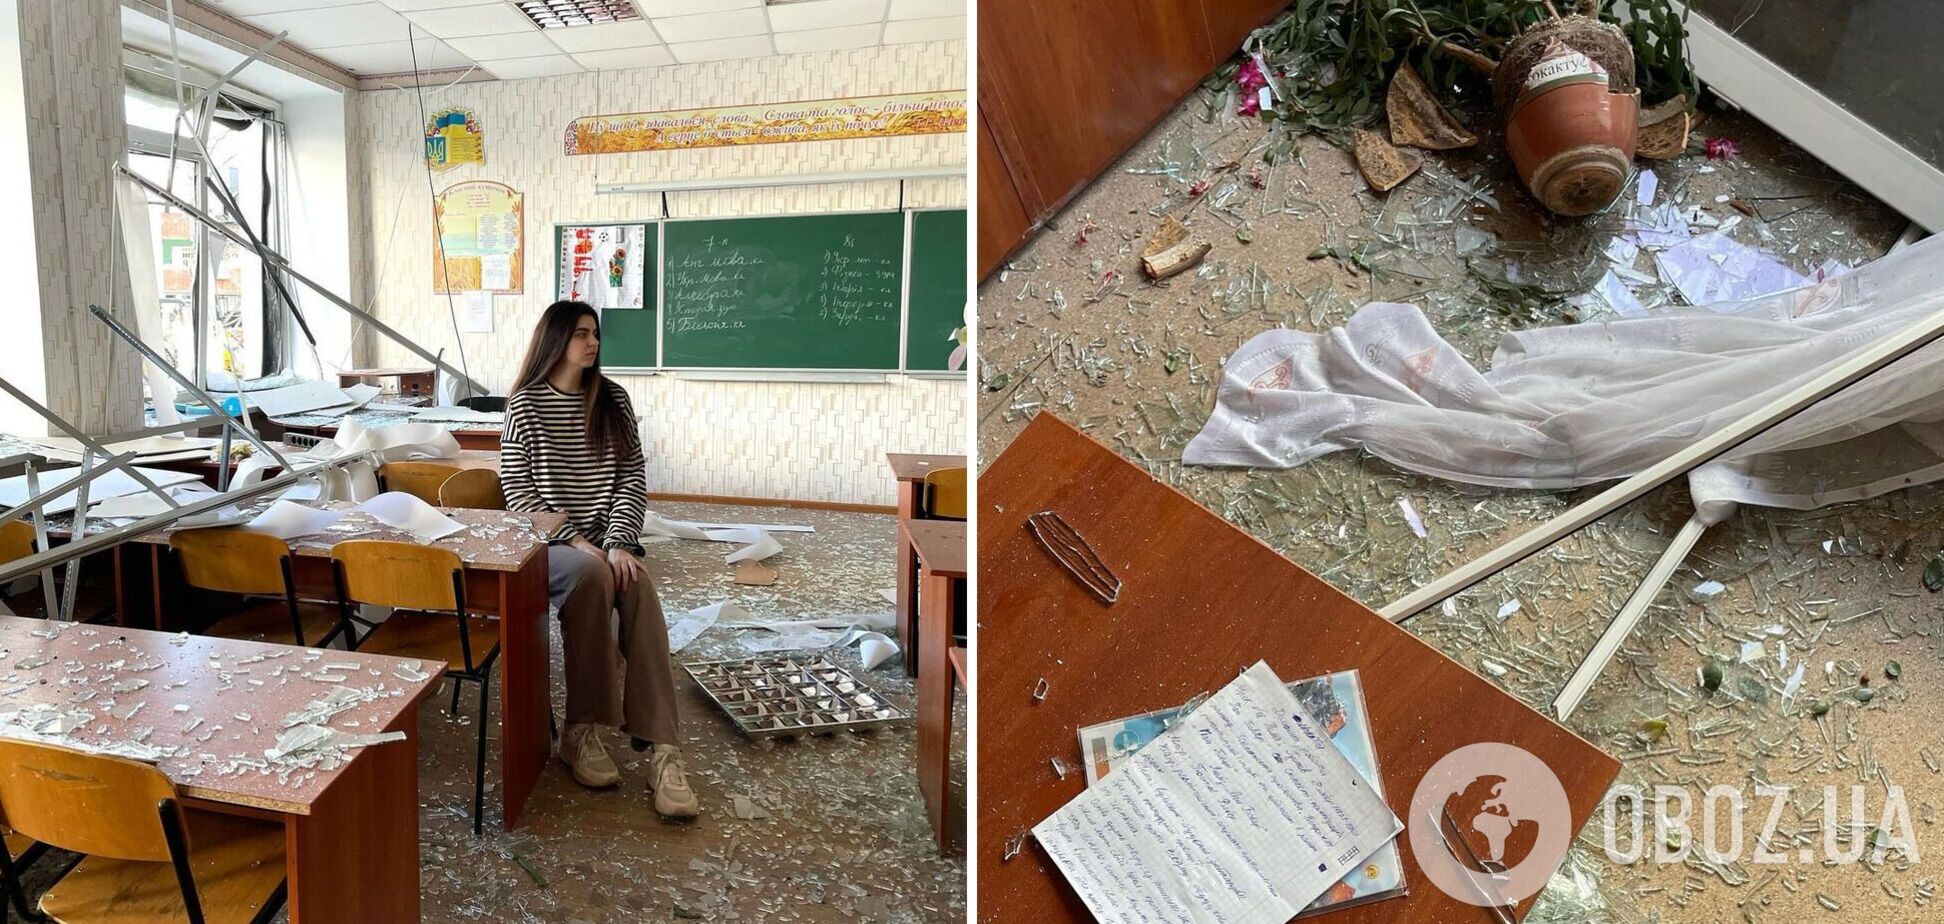 Последний урок перед прилетом был о 'Contra spem spero' Леси Украинки. Учительница показала последствия ракетного удара по колледжу в Днепре и довела сеть до слез